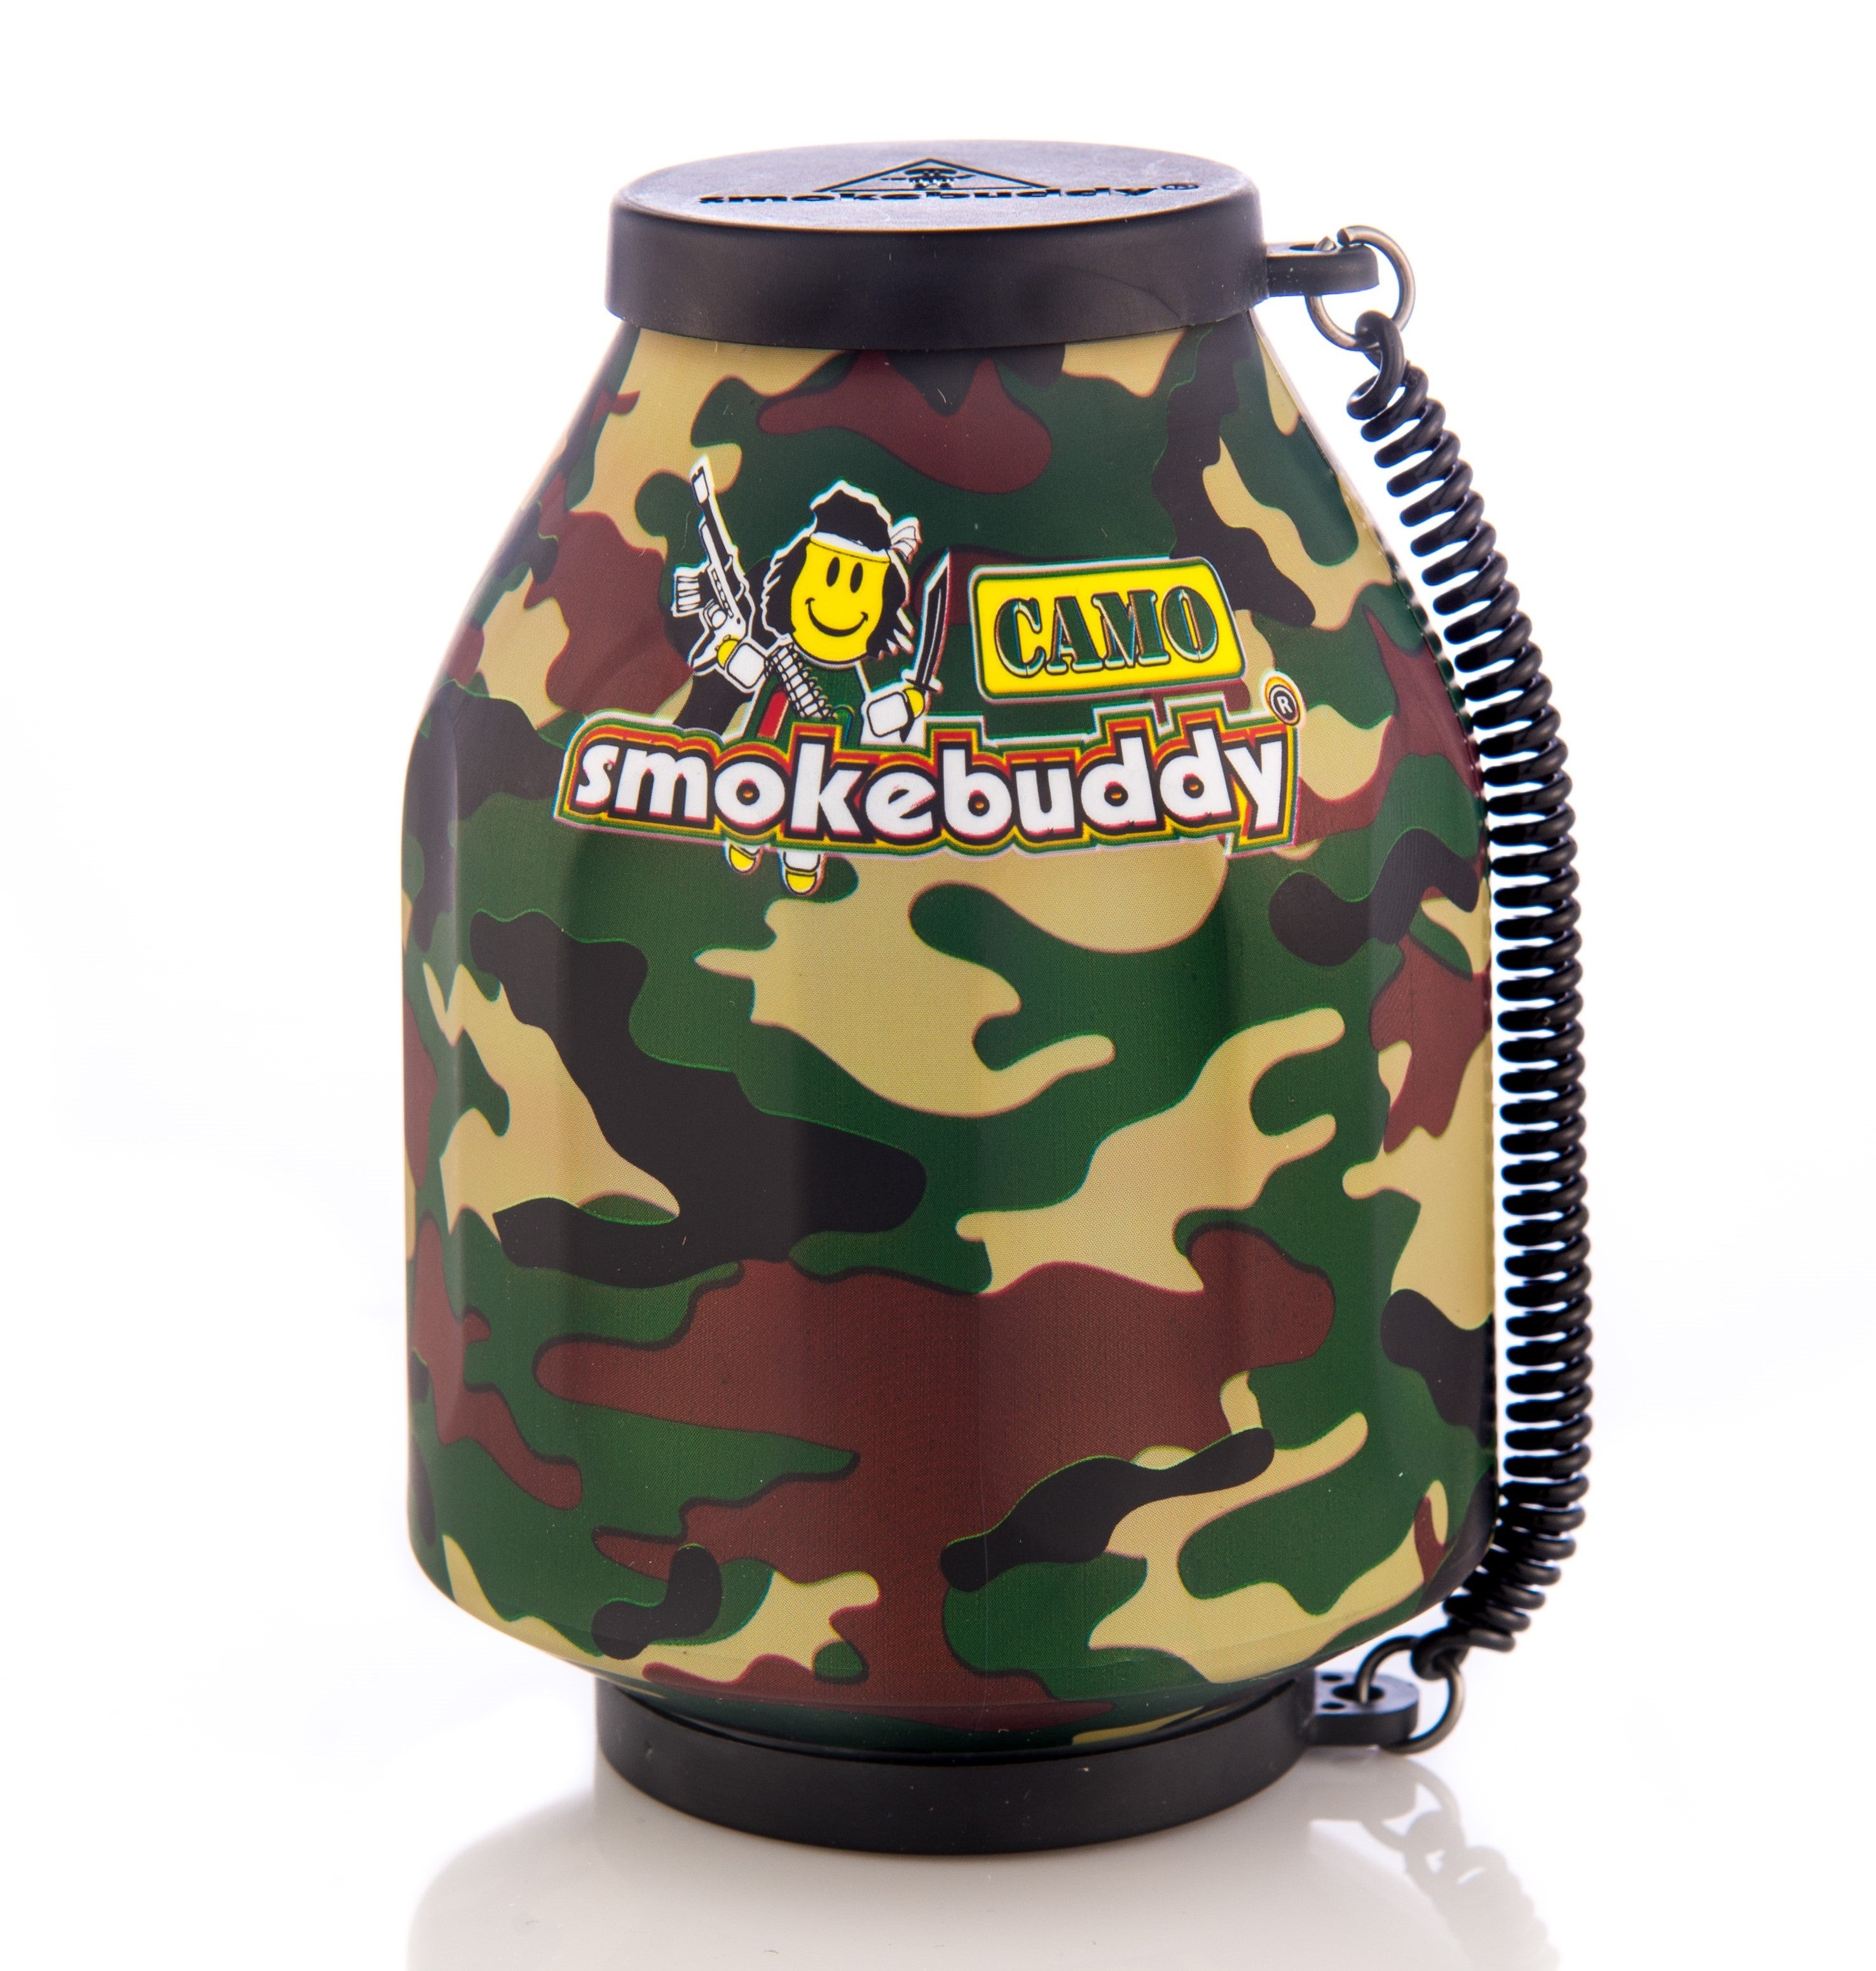 Camo Smokebuddy Original Personal Air Filter